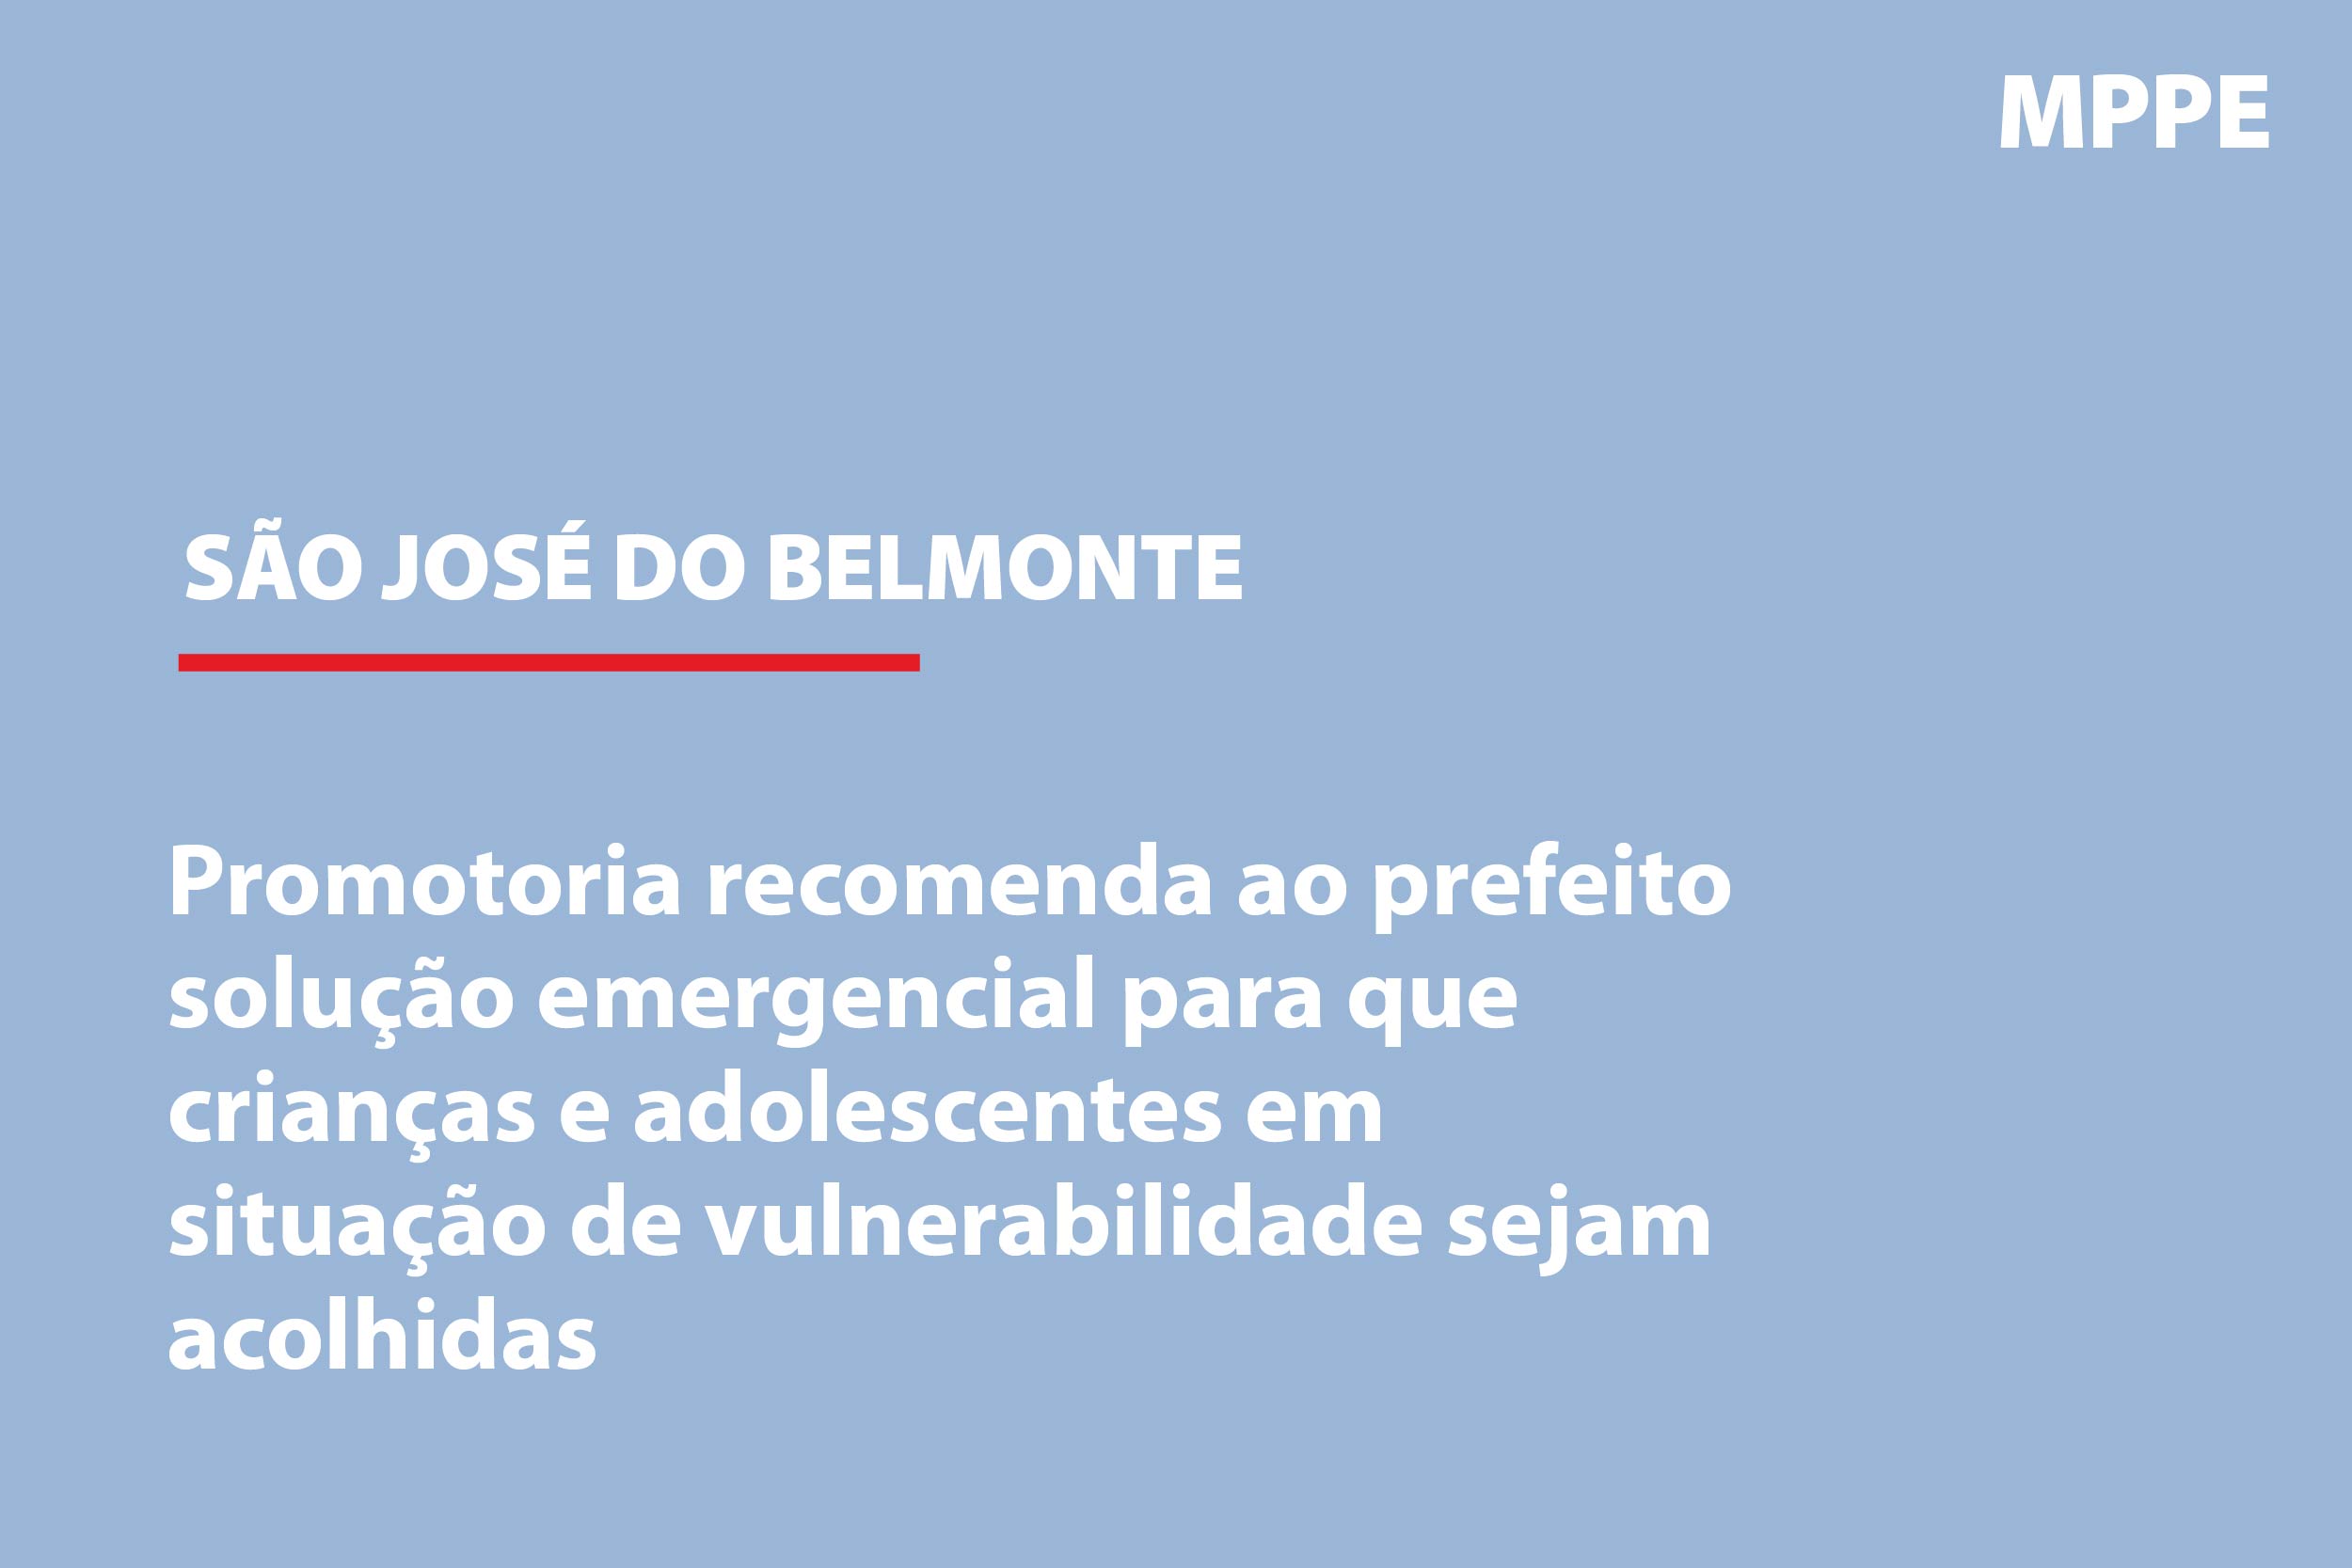 São José do Belmonte: Promotoria recomenda ao prefeito solução emergencial para que crianças e adolescentes em situação de vulnerabilidade sejam acolhidas